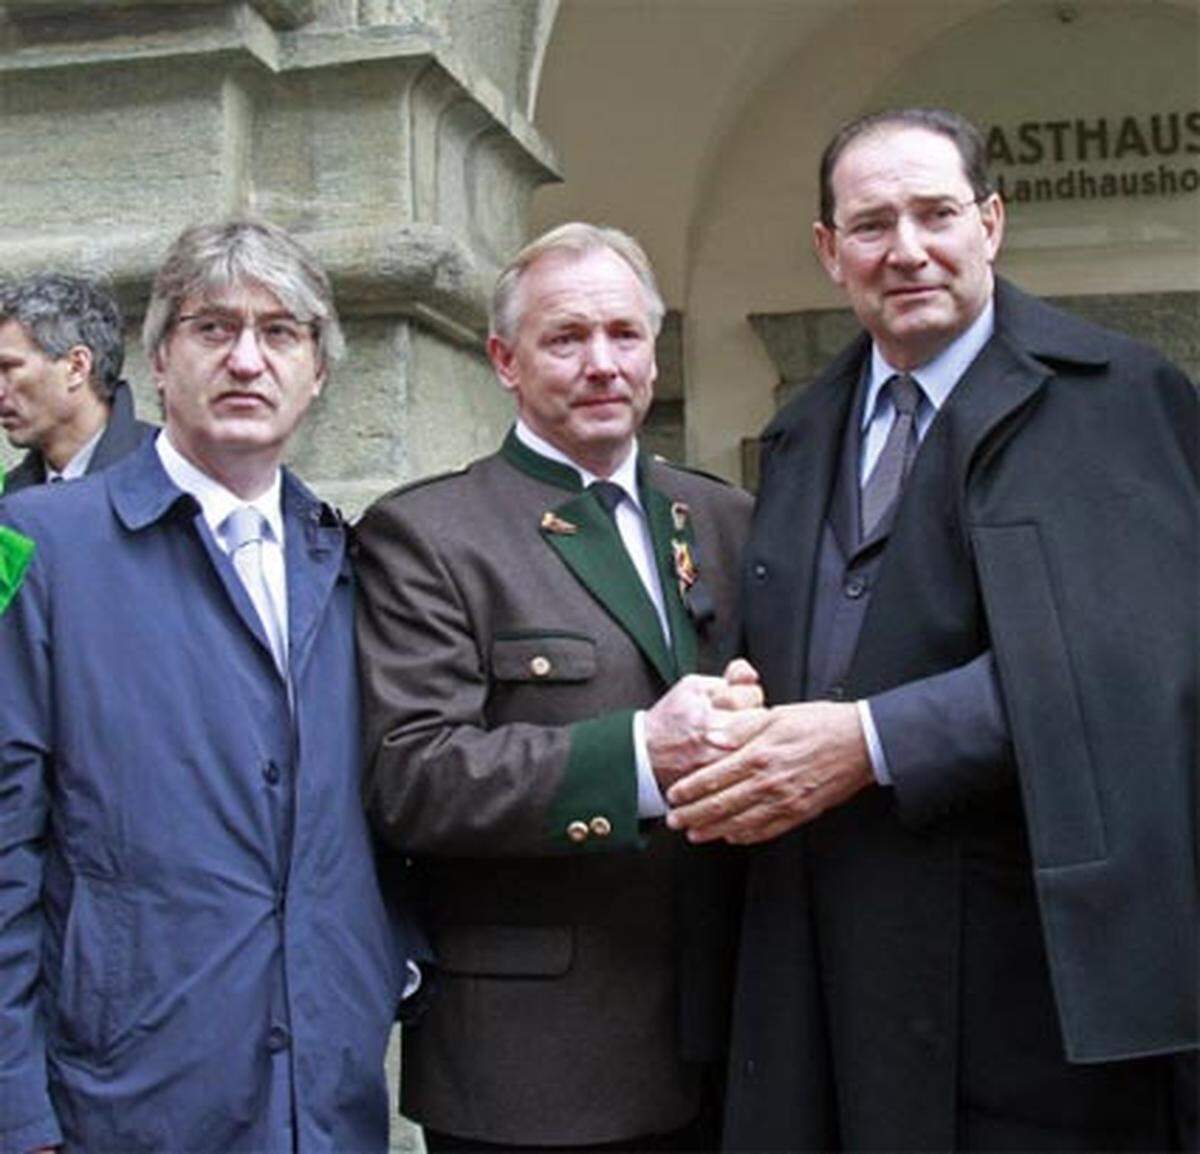 Die PrÄsidenten der Regionen Friaul-Julisch Venetien und Veneto, Renzo Tondo (links) und Gianfranco Galan (rechts) mit dem amtsführenden Kärntner Landeshauptmann Gerhard Dörfler.